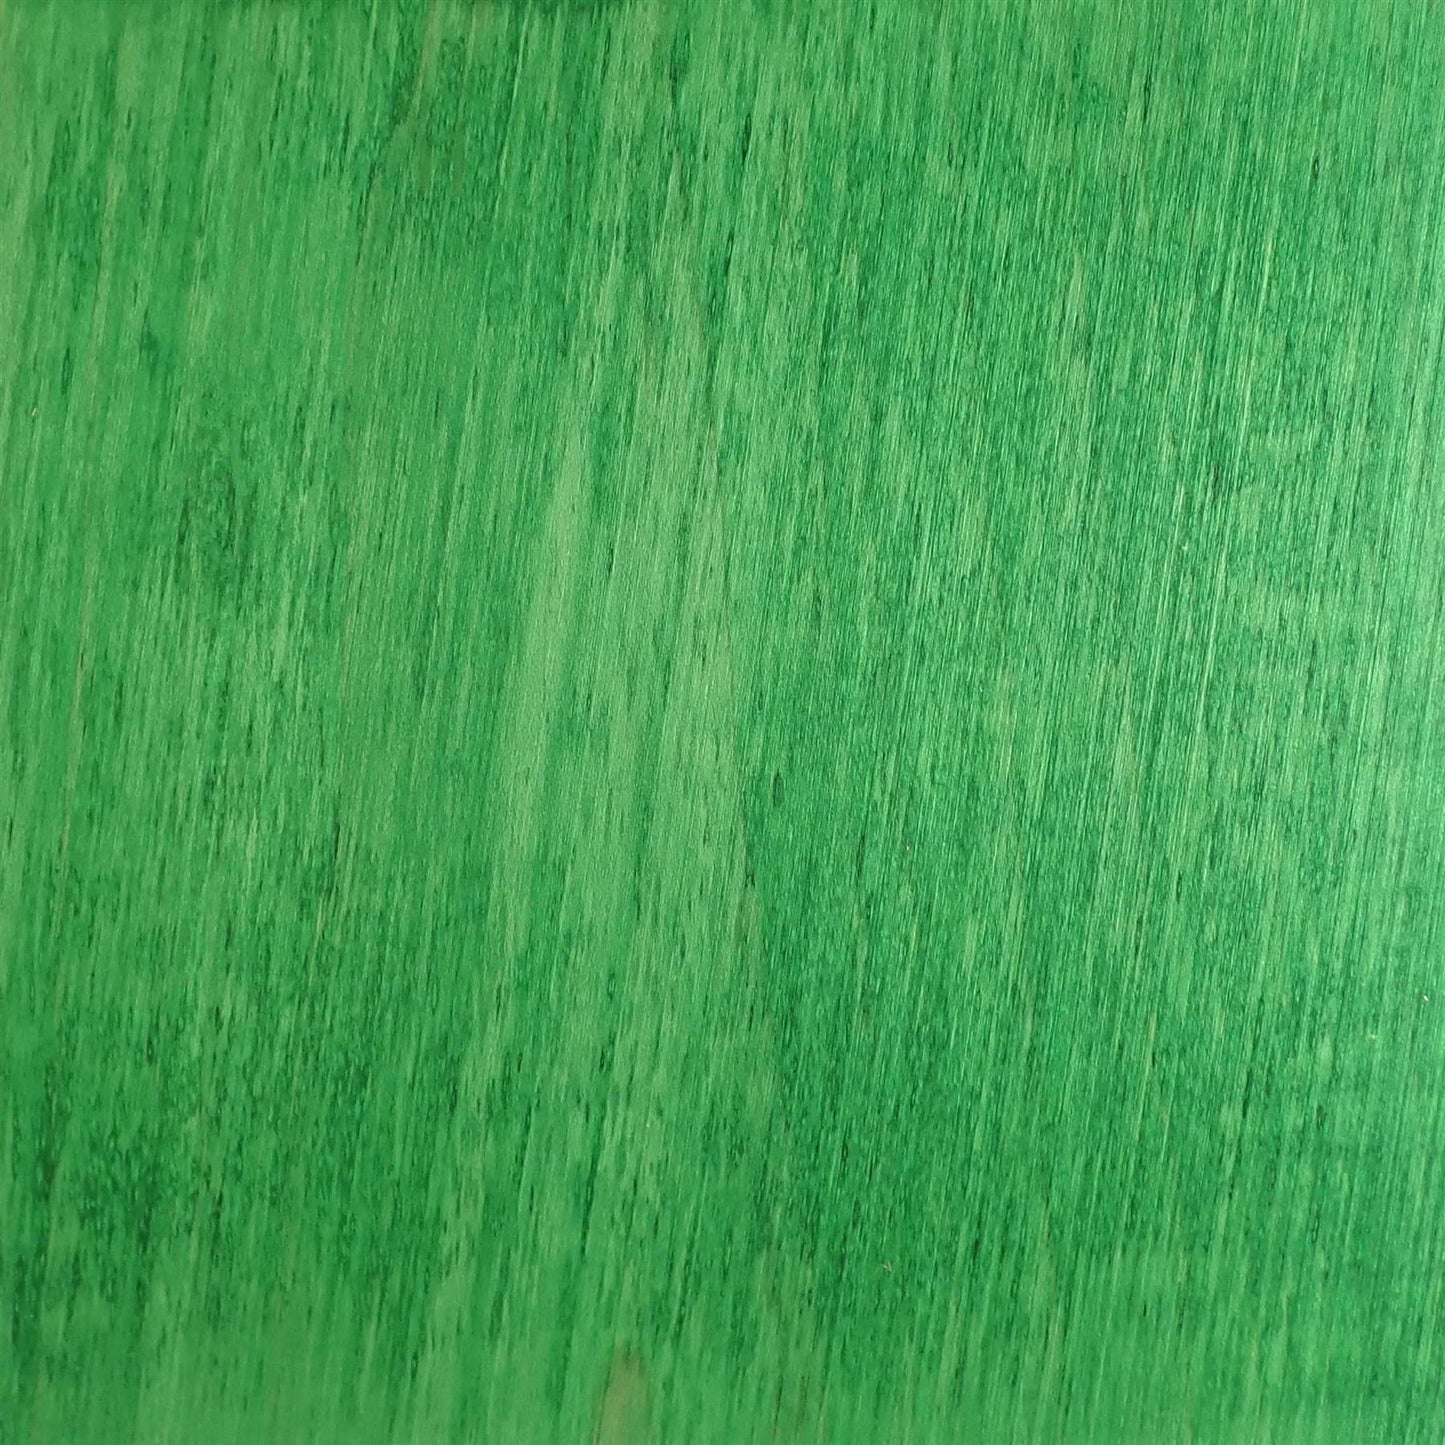 dartfords Green Alcohol Soluble Aniline Wood Dye Powder - 28g 1Oz